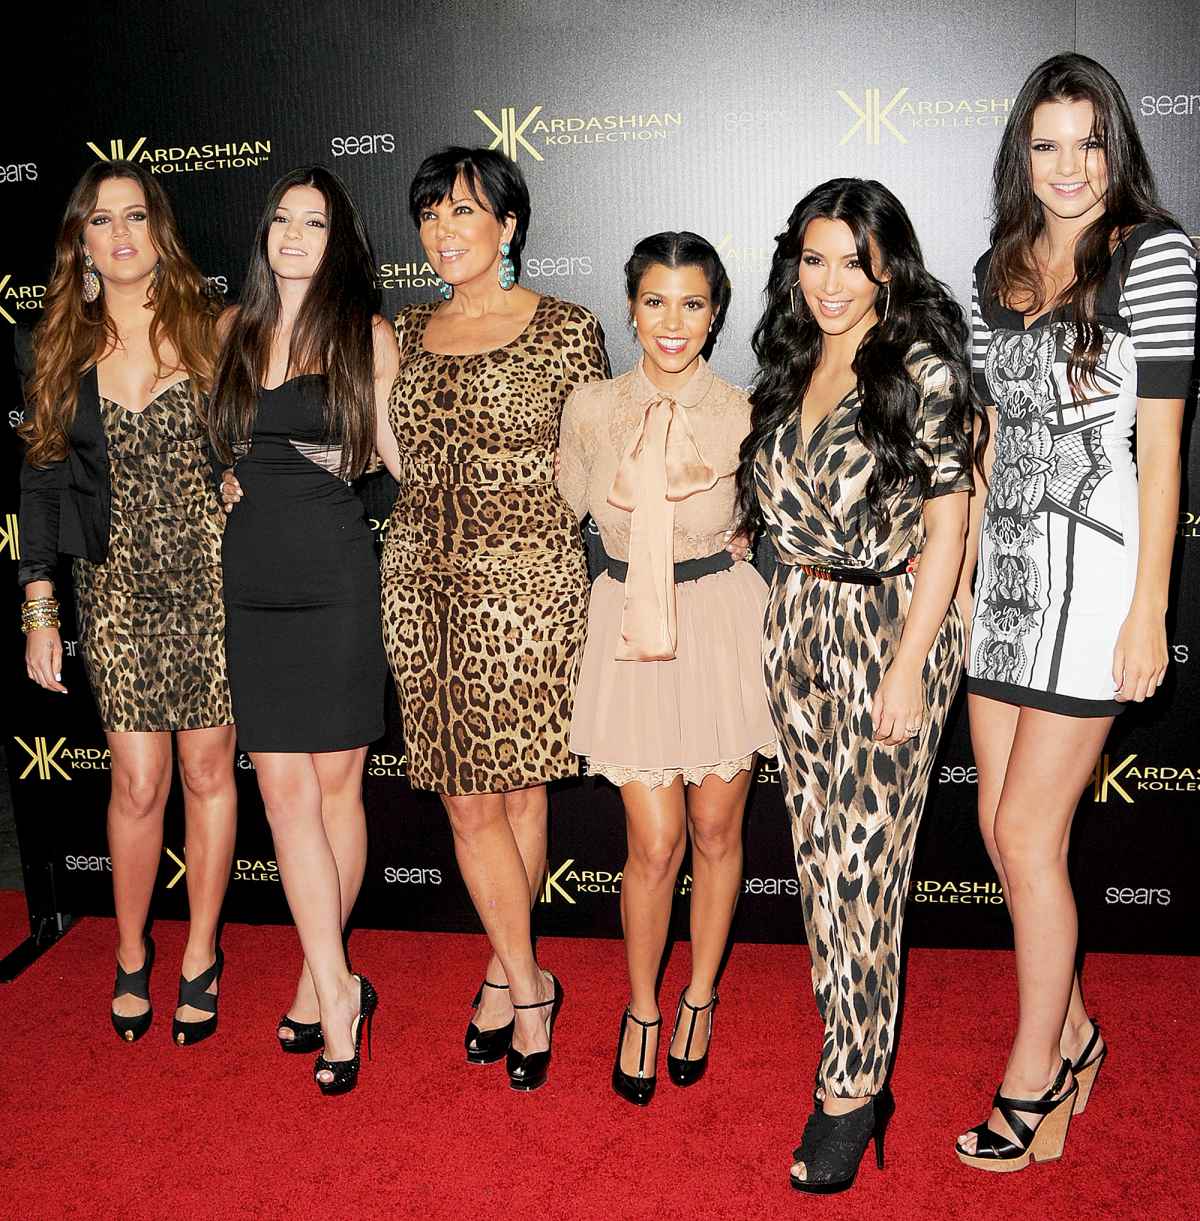 Why Khloe Kardashian Promoted Scott's Brand Despite Kourtney Drama